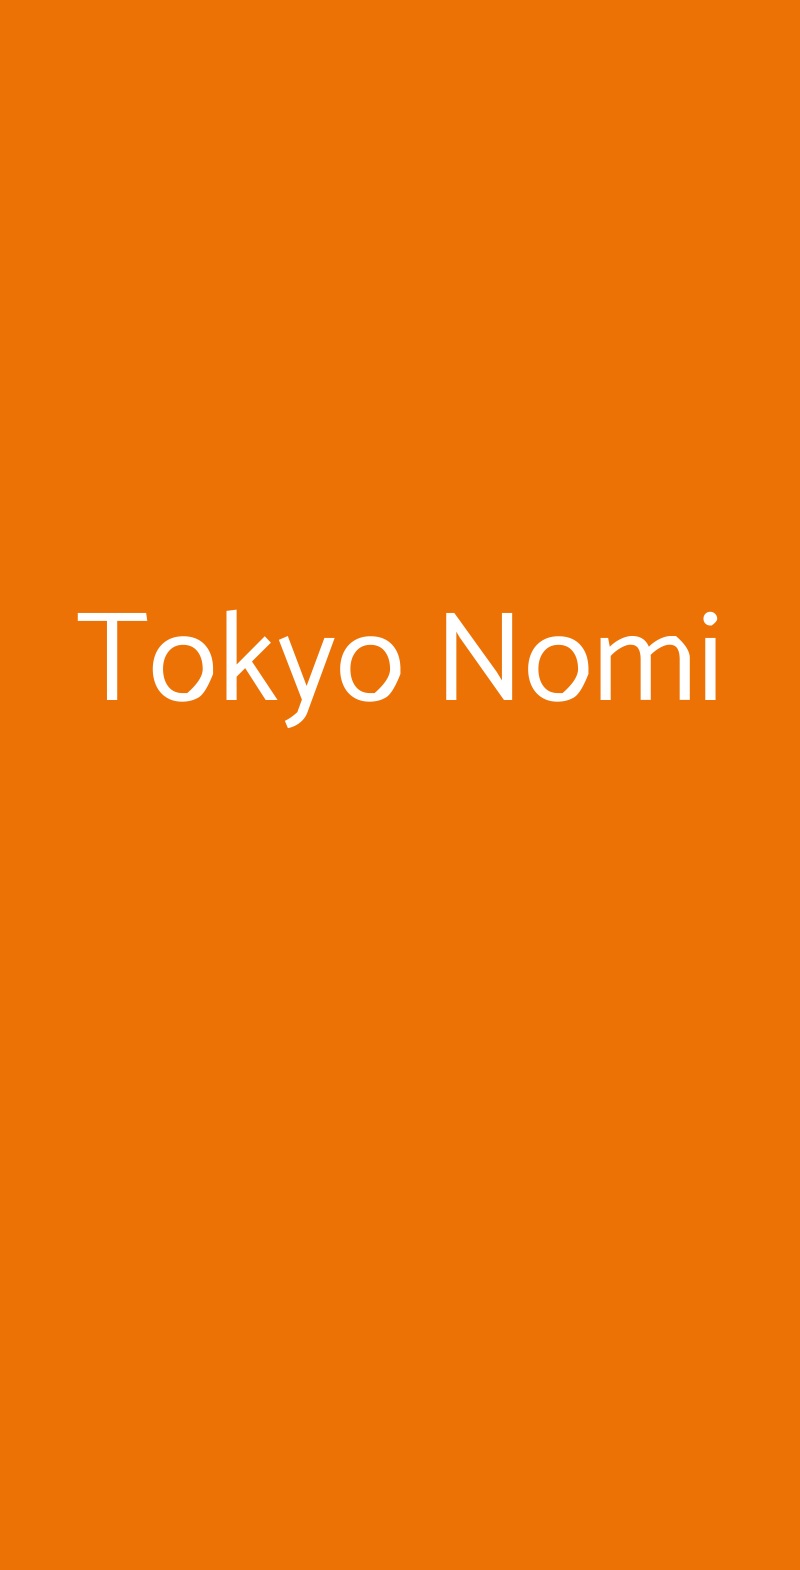 Tokyo Nomi Milano menù 1 pagina